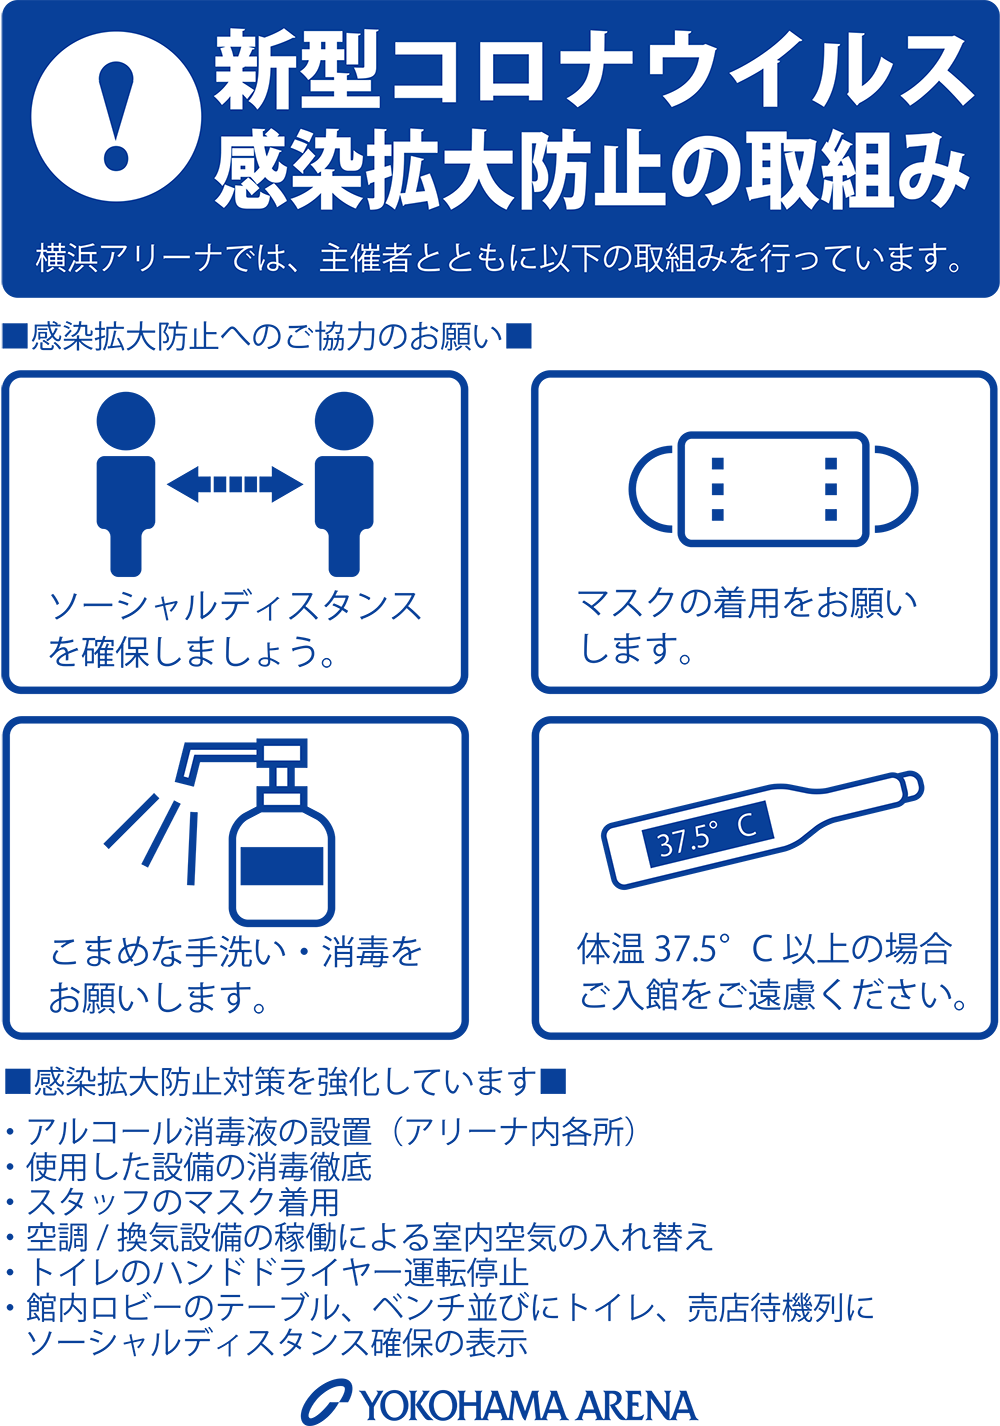 横浜アリーナの新型コロナウイルス感染症対策に関するご案内